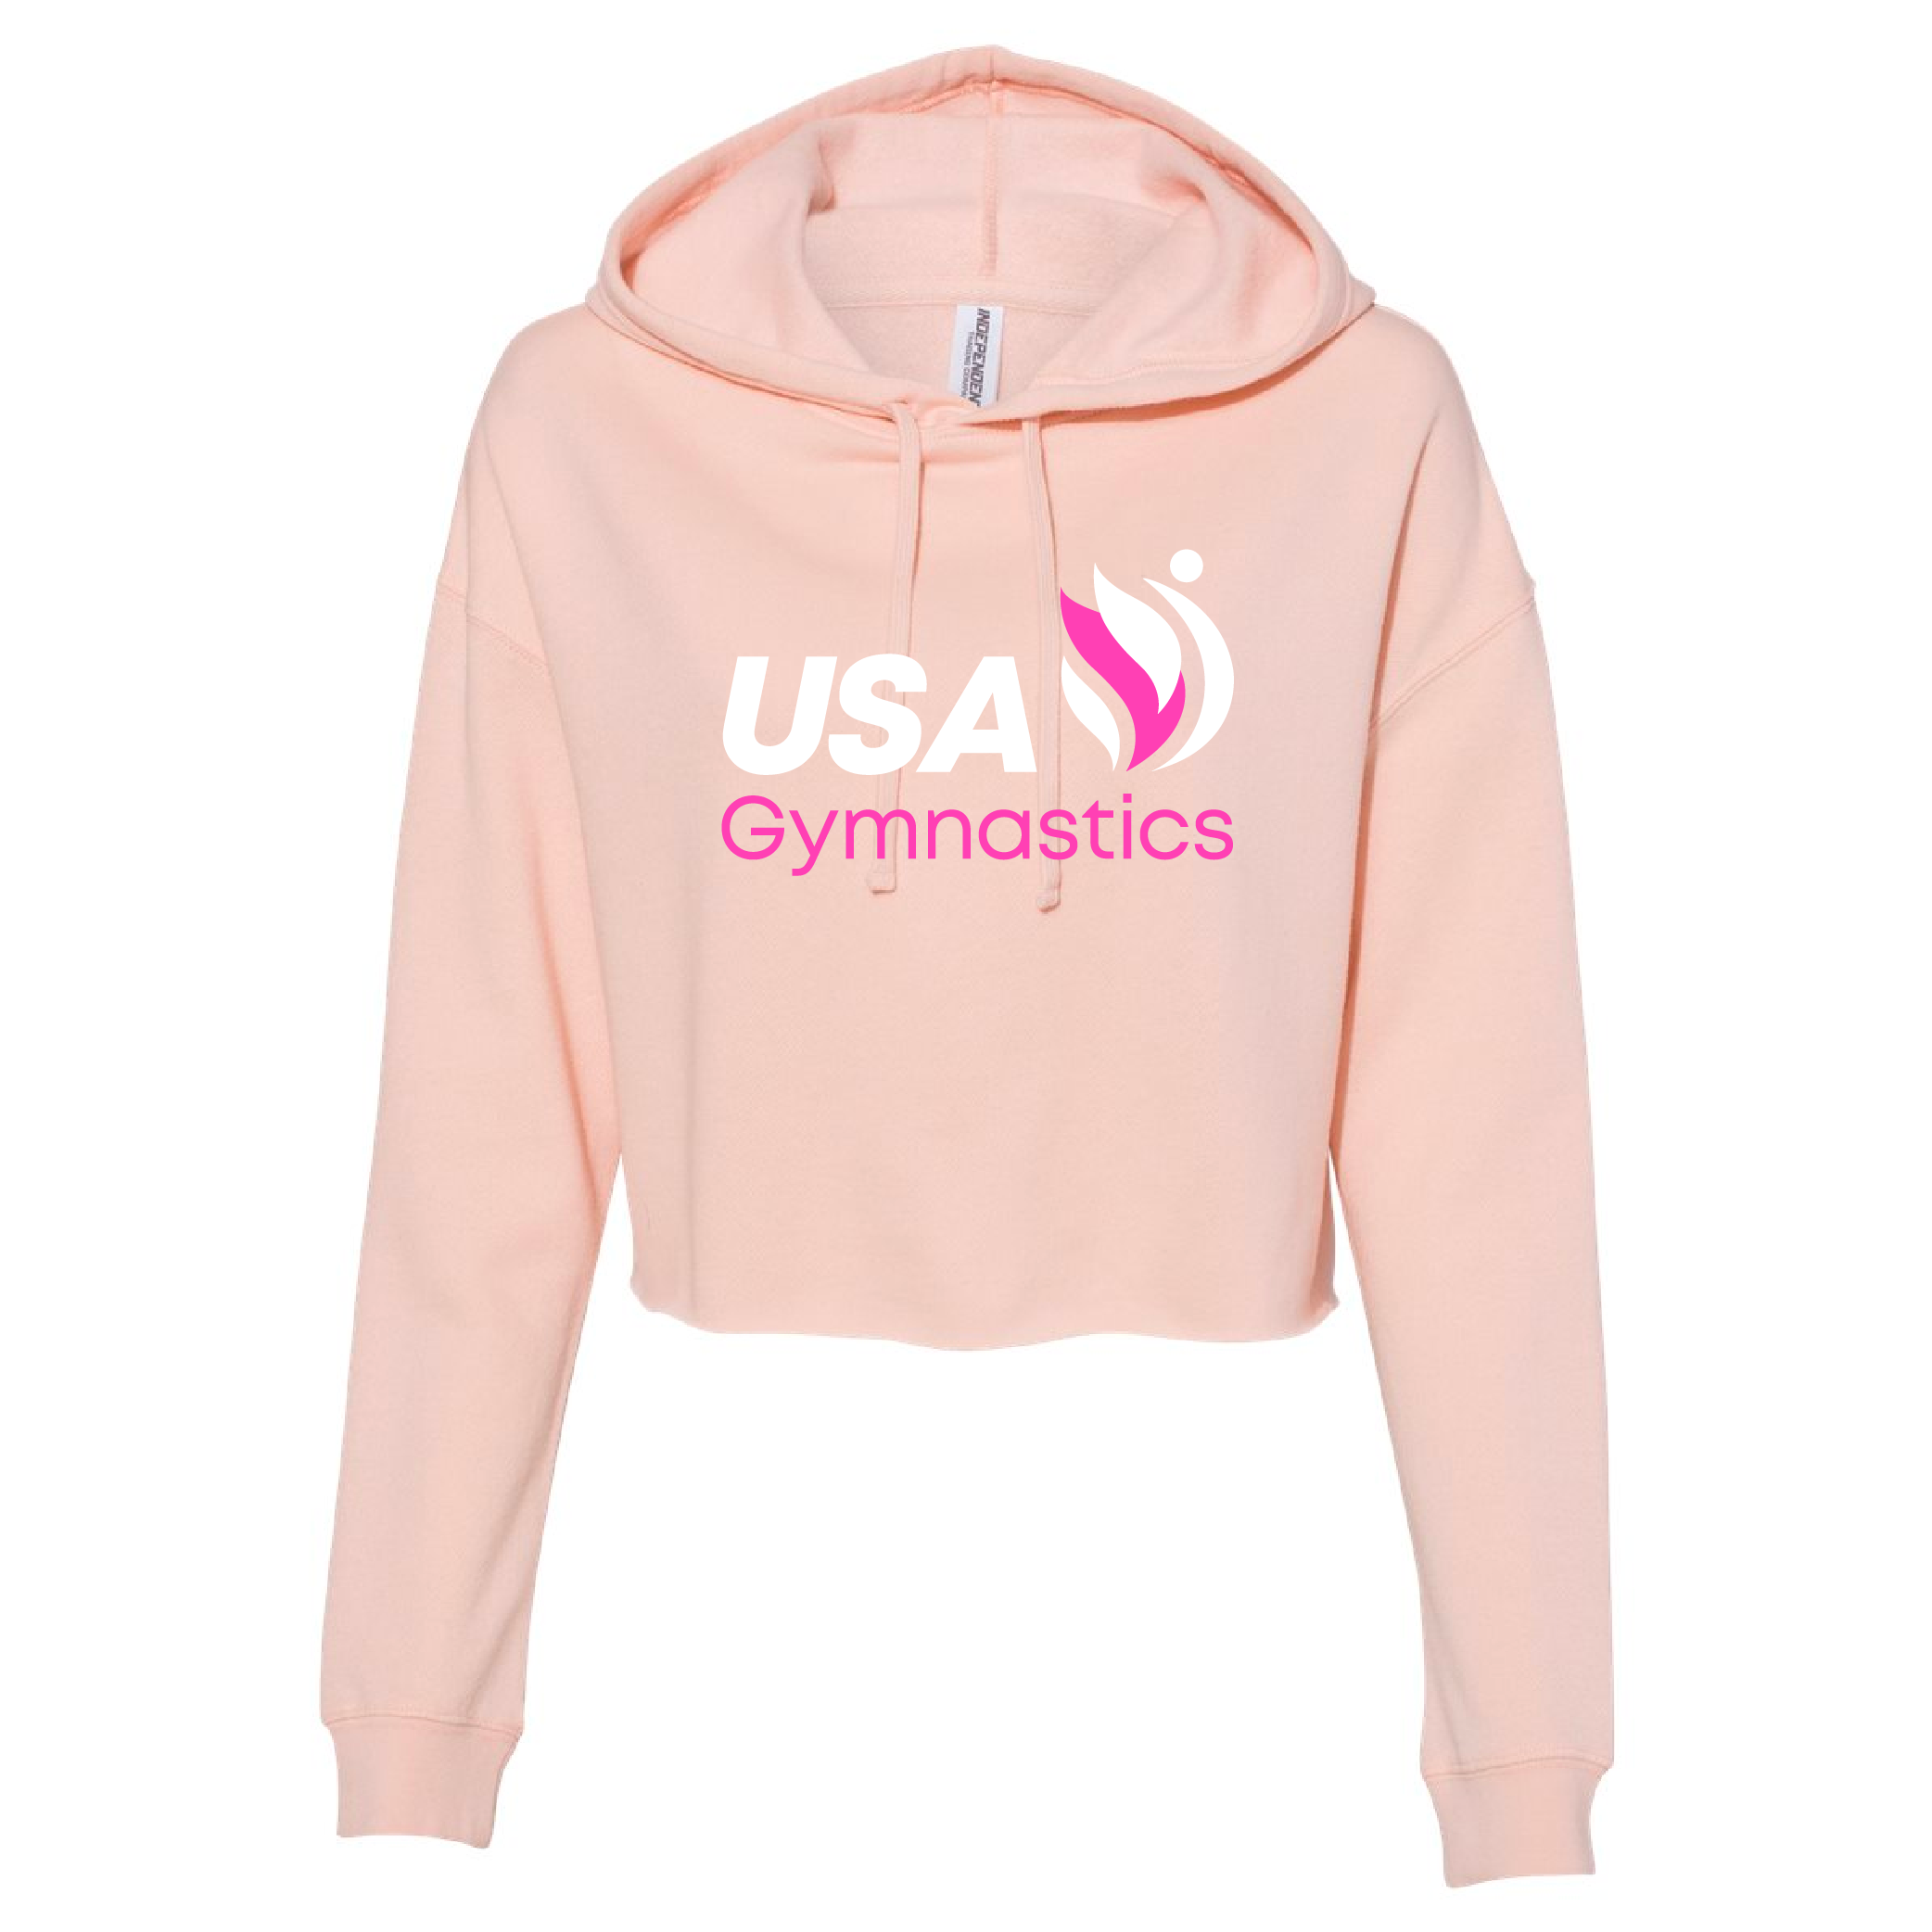 USA Gym Store - Merchandise & Apparel for USA Gymnastics